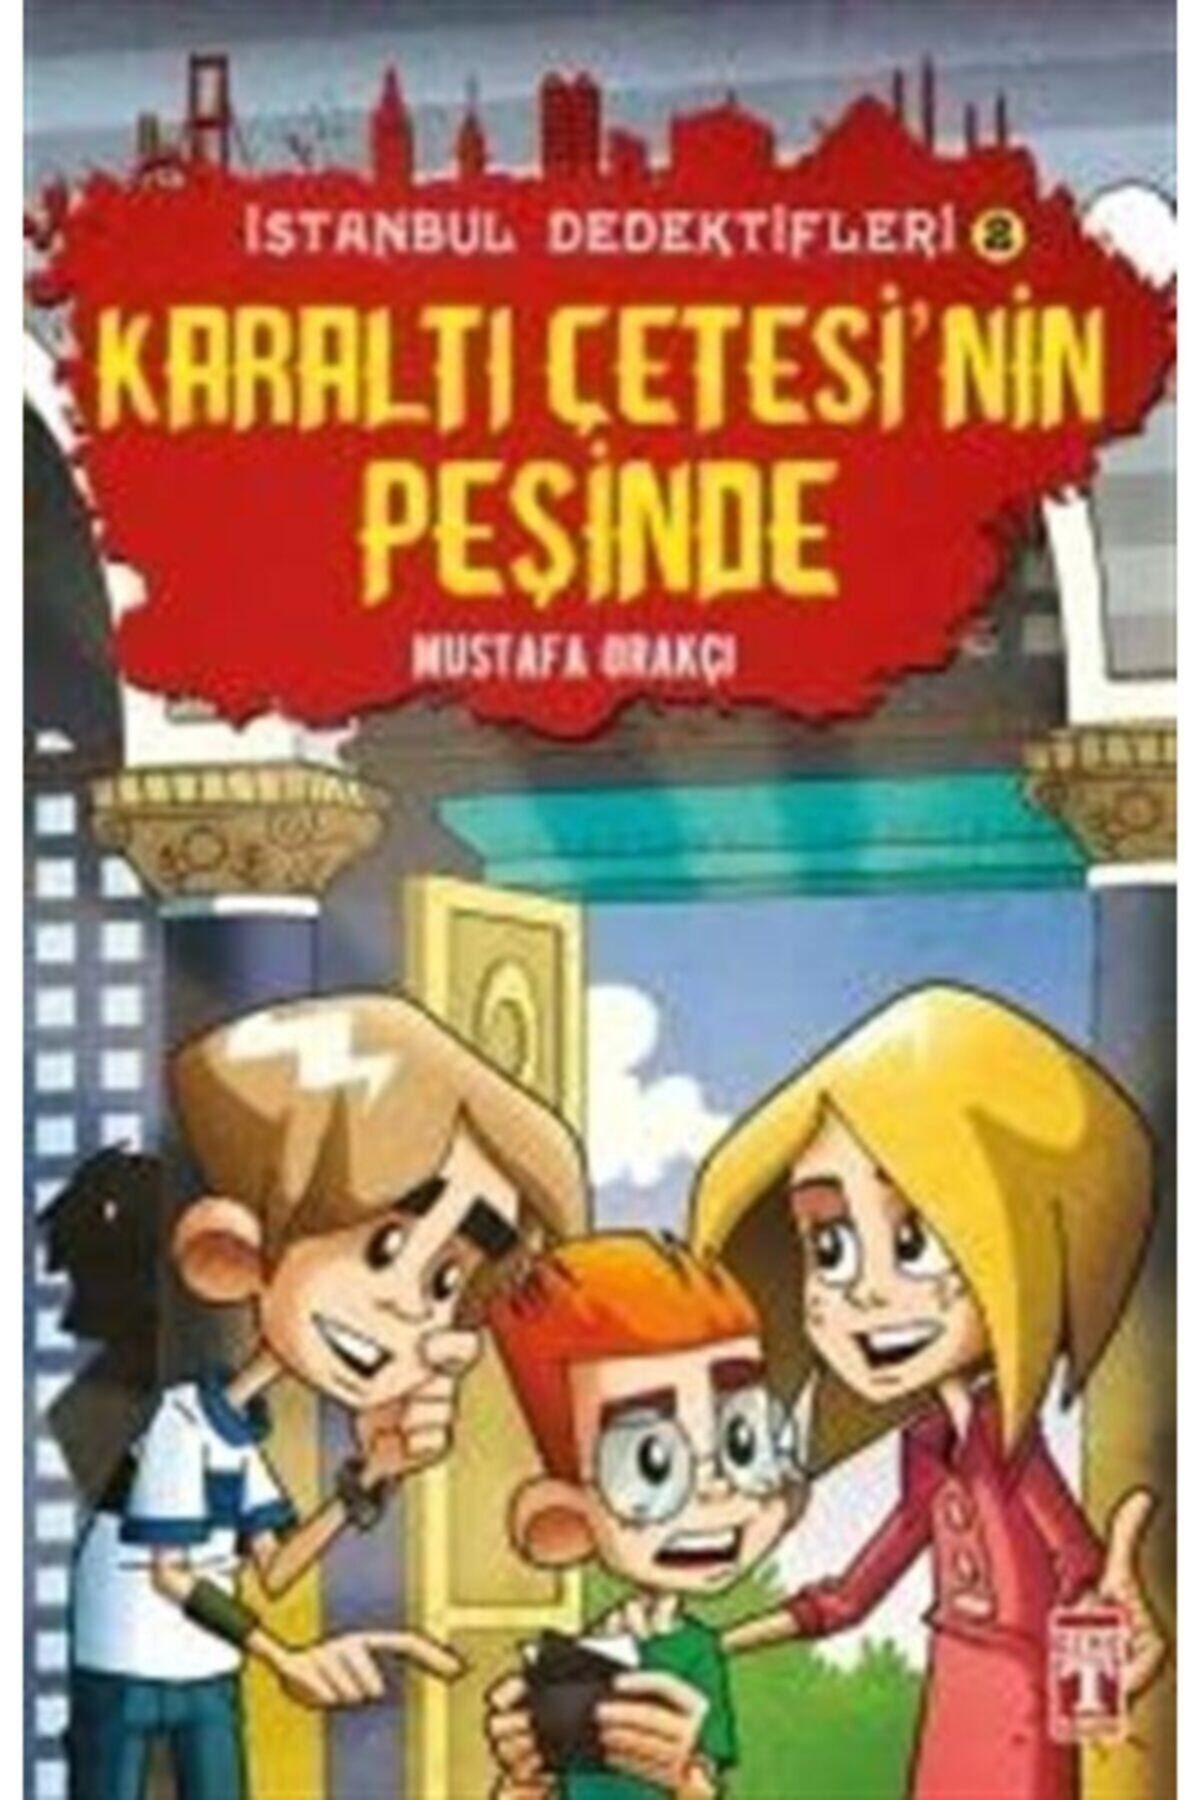 Timaş Yayınları Mustafa Orakçı Istanbul Dedektifleri - Karaltı Çetesinin Peşinde 9786050808285 - Mustafa Orak?